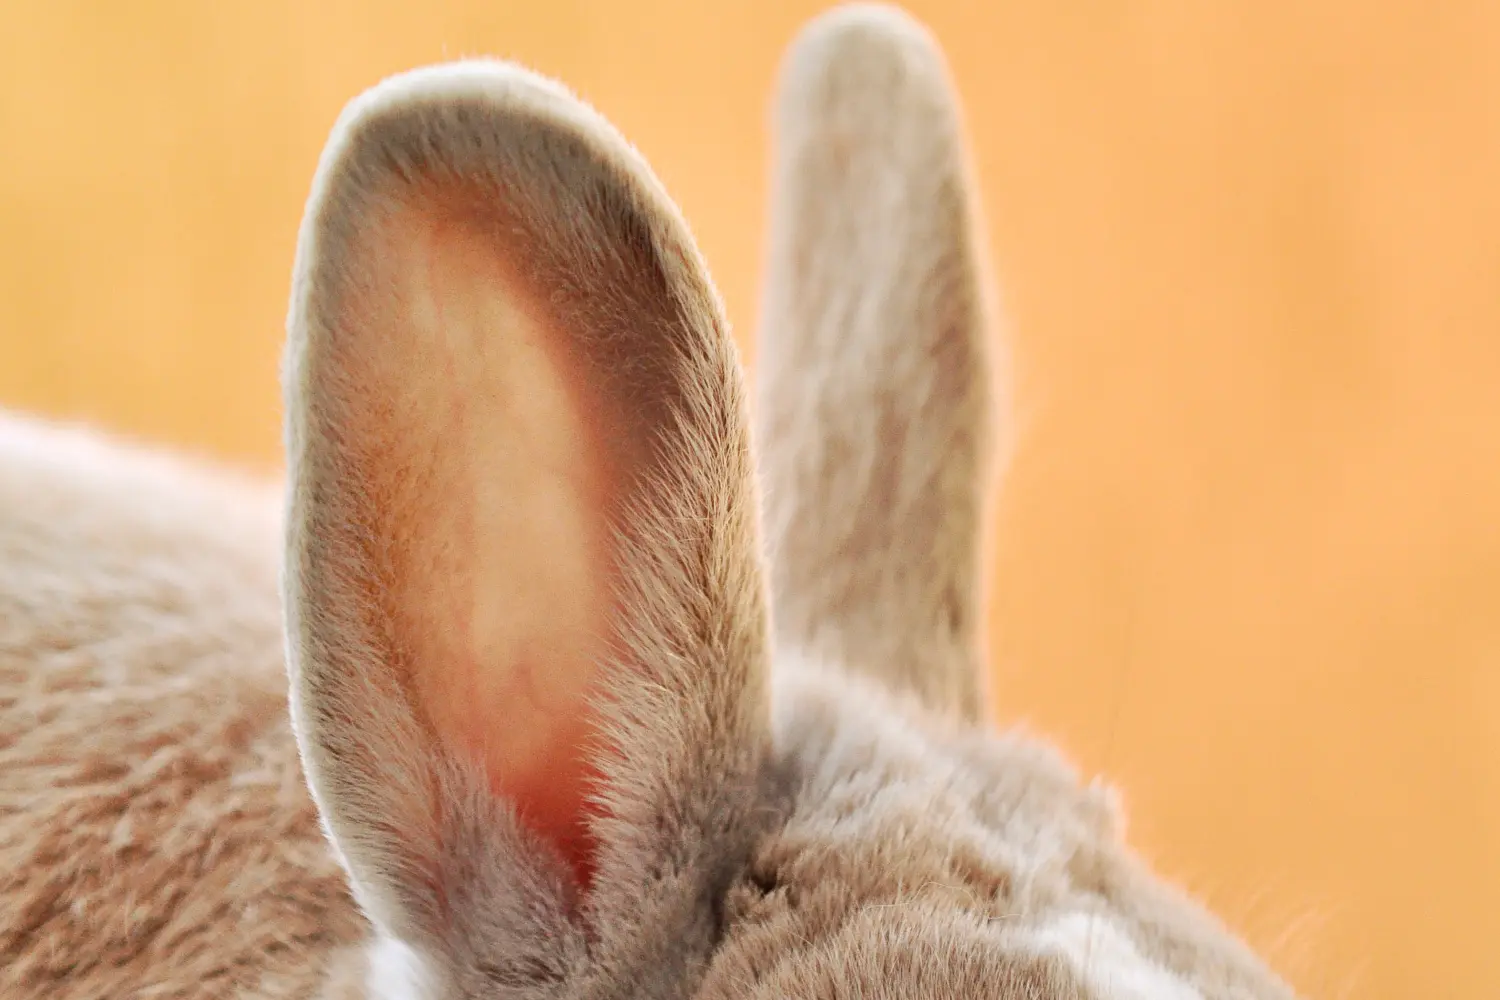 Ears of chiatto bunny